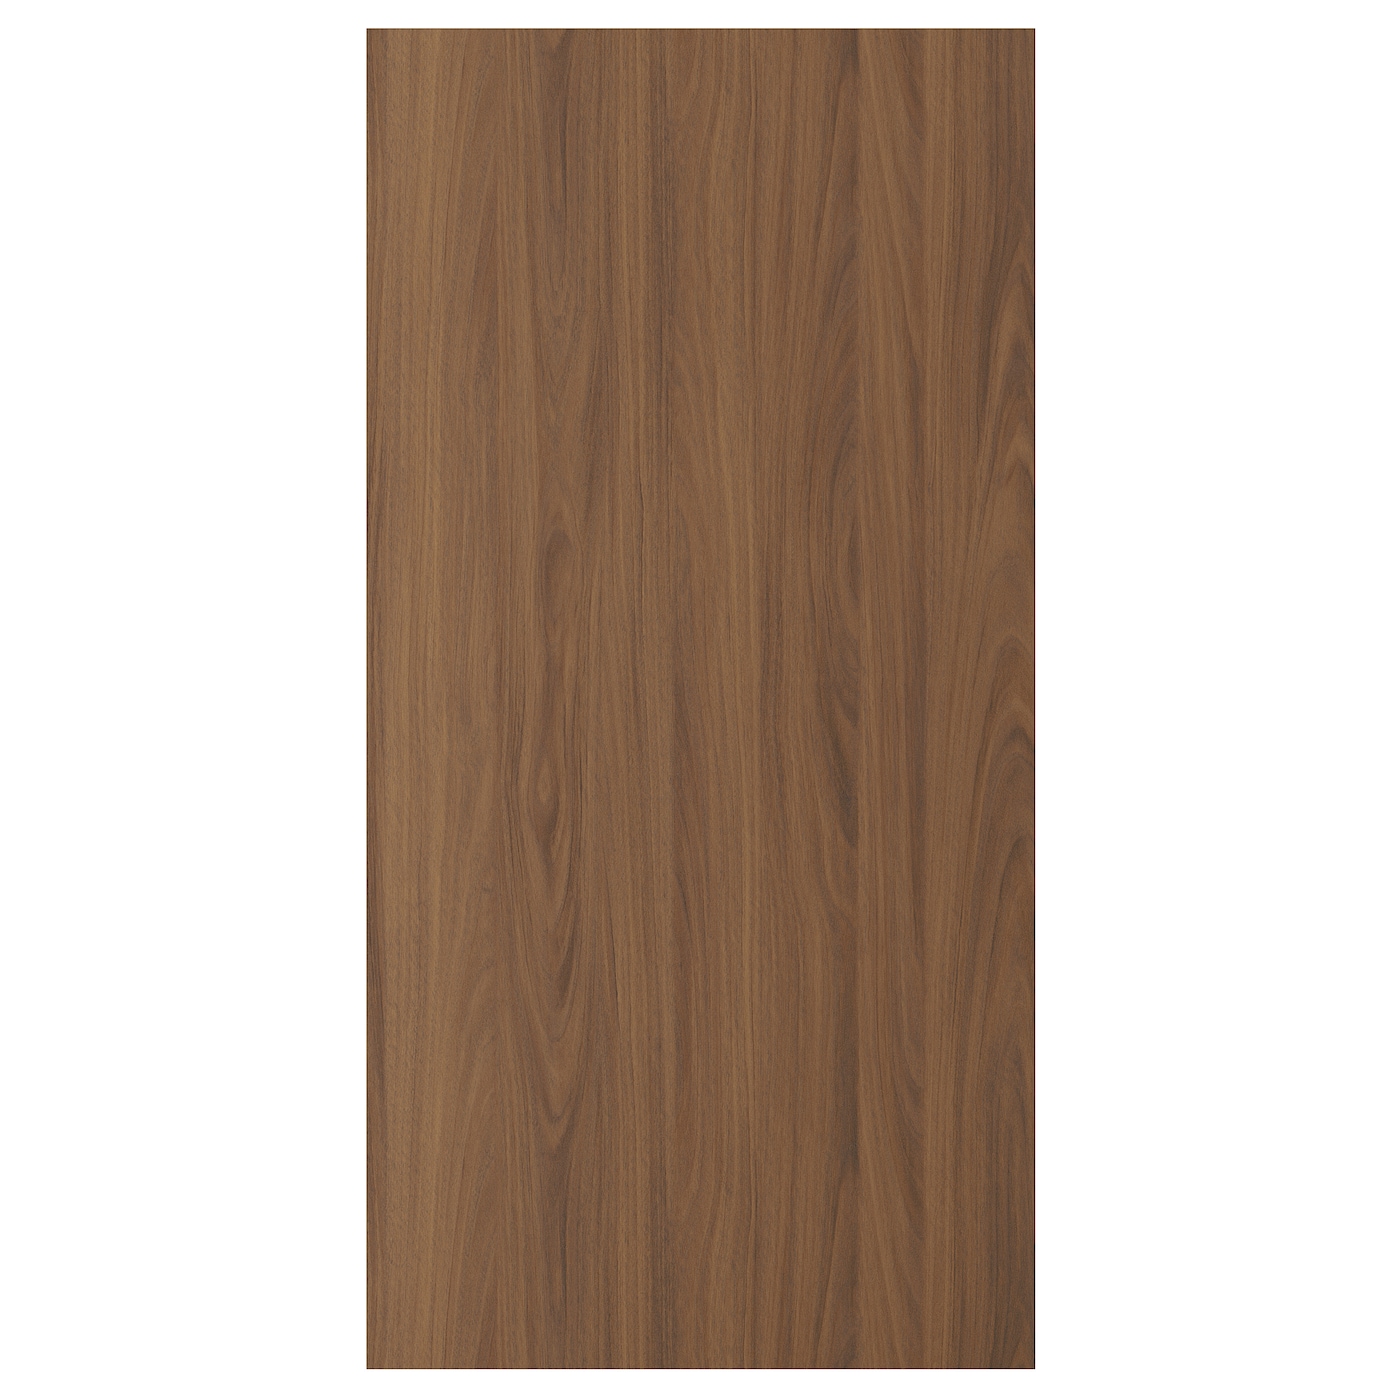 Дверца  - TISTORP IKEA/ ТИСТОРП ИКЕА,  120х60 см, коричневый